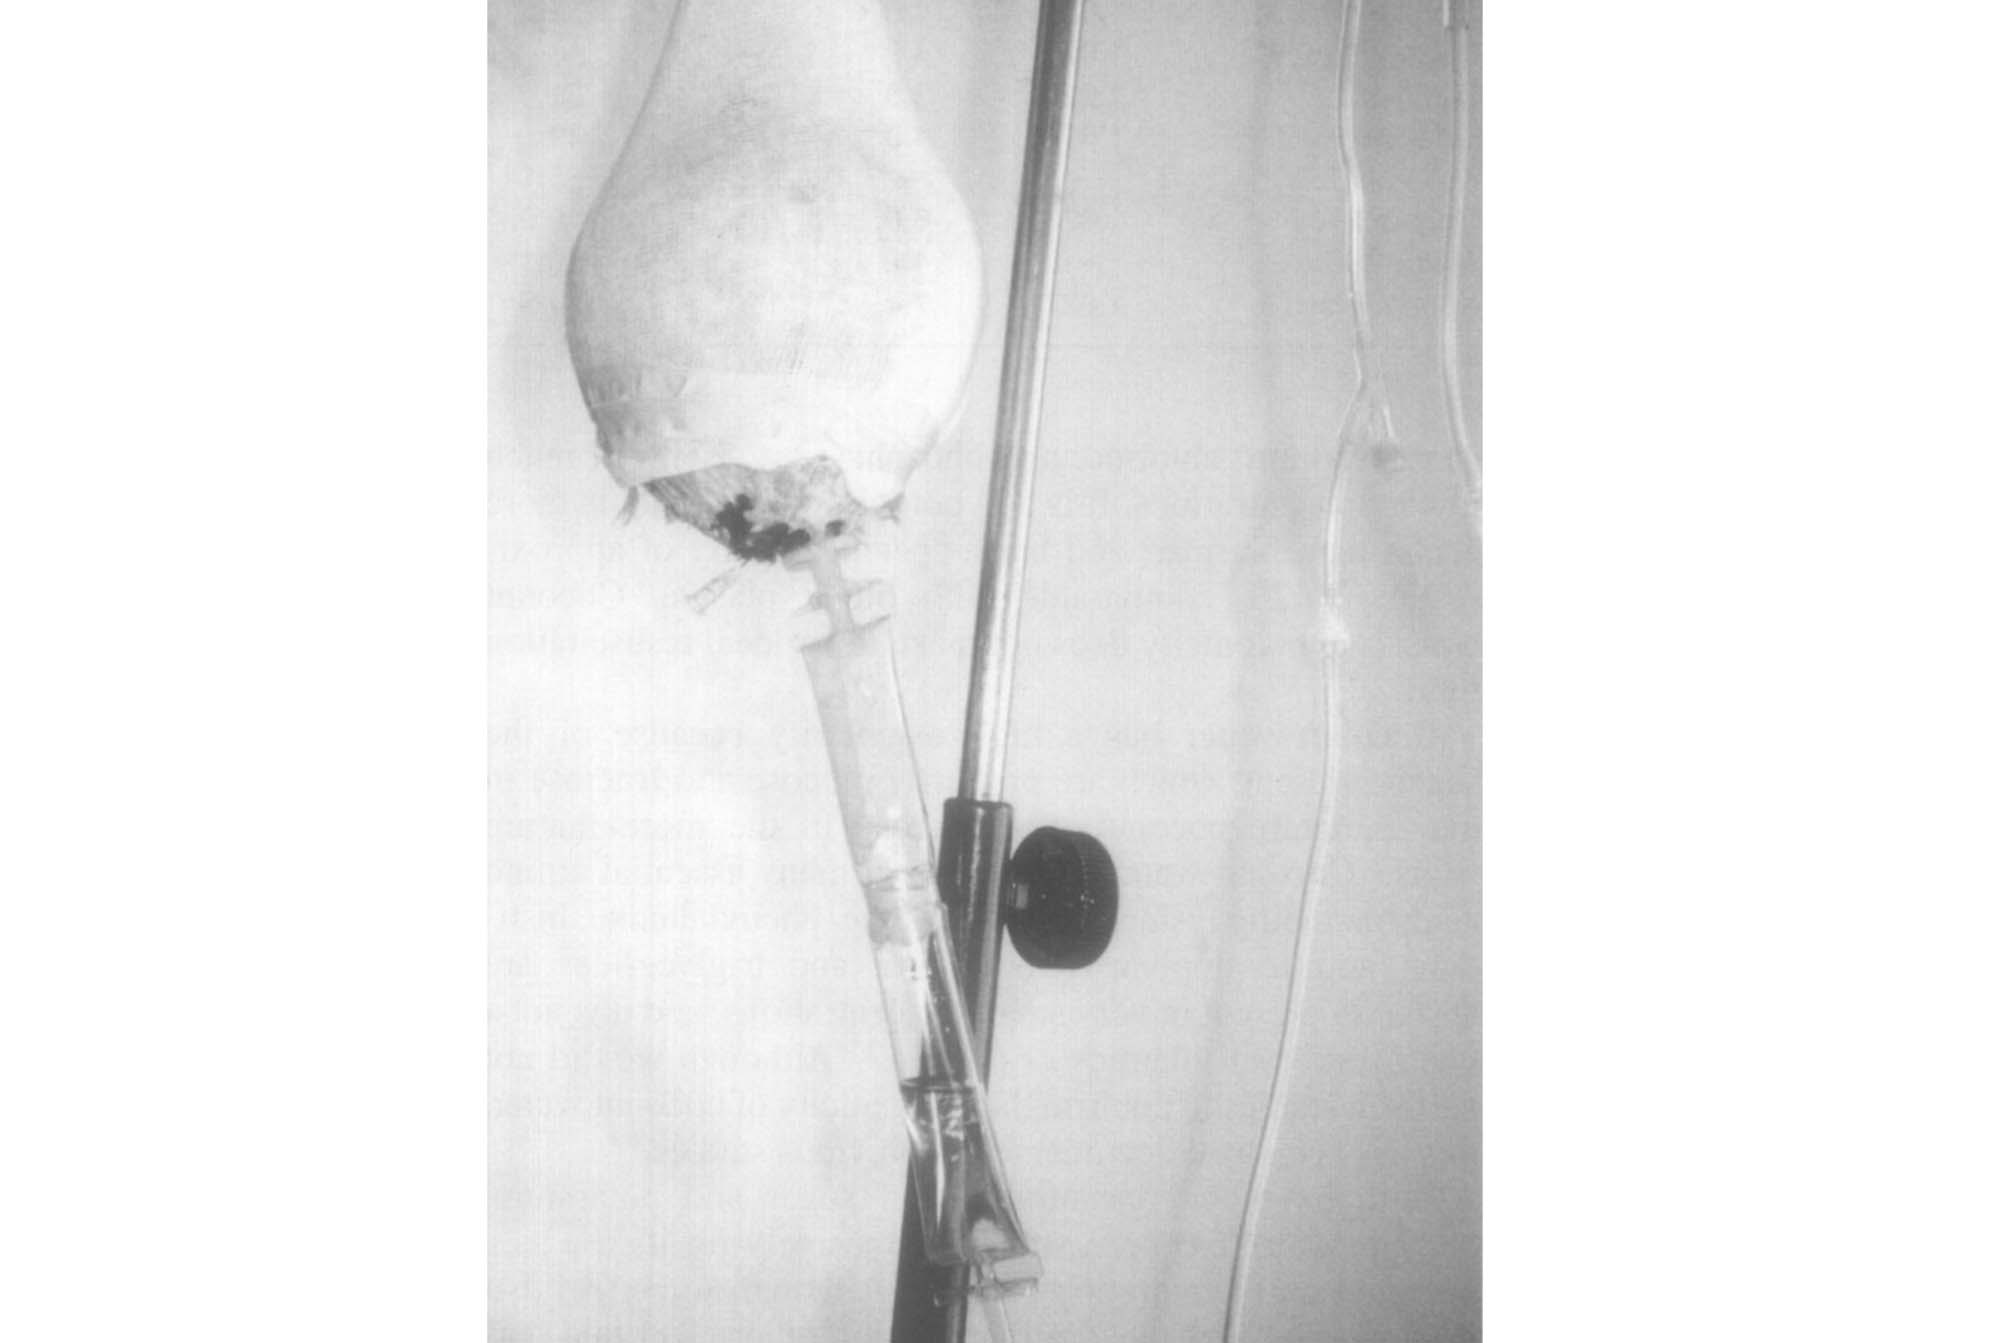 تزریق آب نارگیل به جای سرم به یک فرد در سال 1992